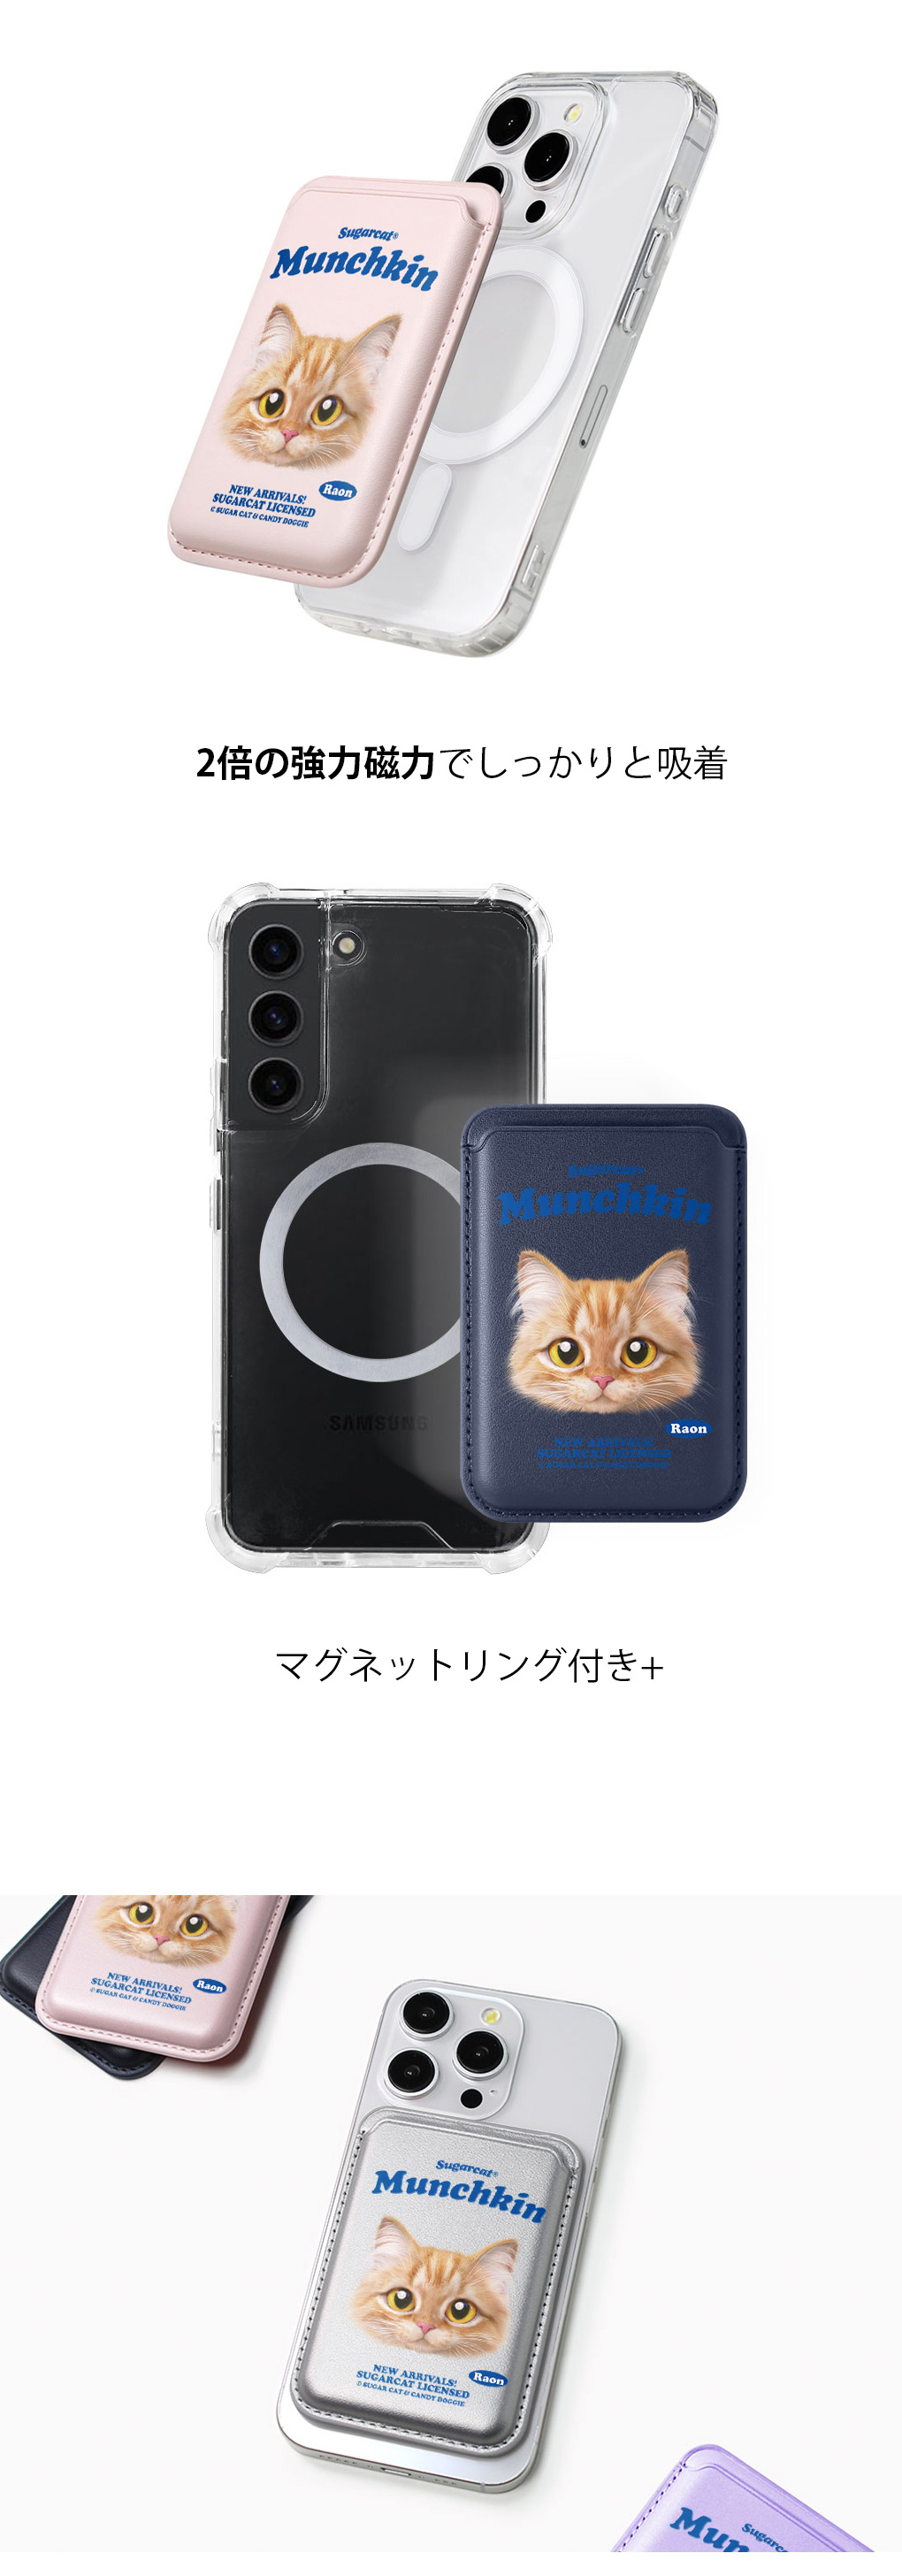 [sugarcat] MagSafe カードケース マンチカン Raon / マンチカンデザイン マグセーフ MagSafe対応 レザーウォレット カードケース シュガーキャット 猫 ペット #クリックポスト